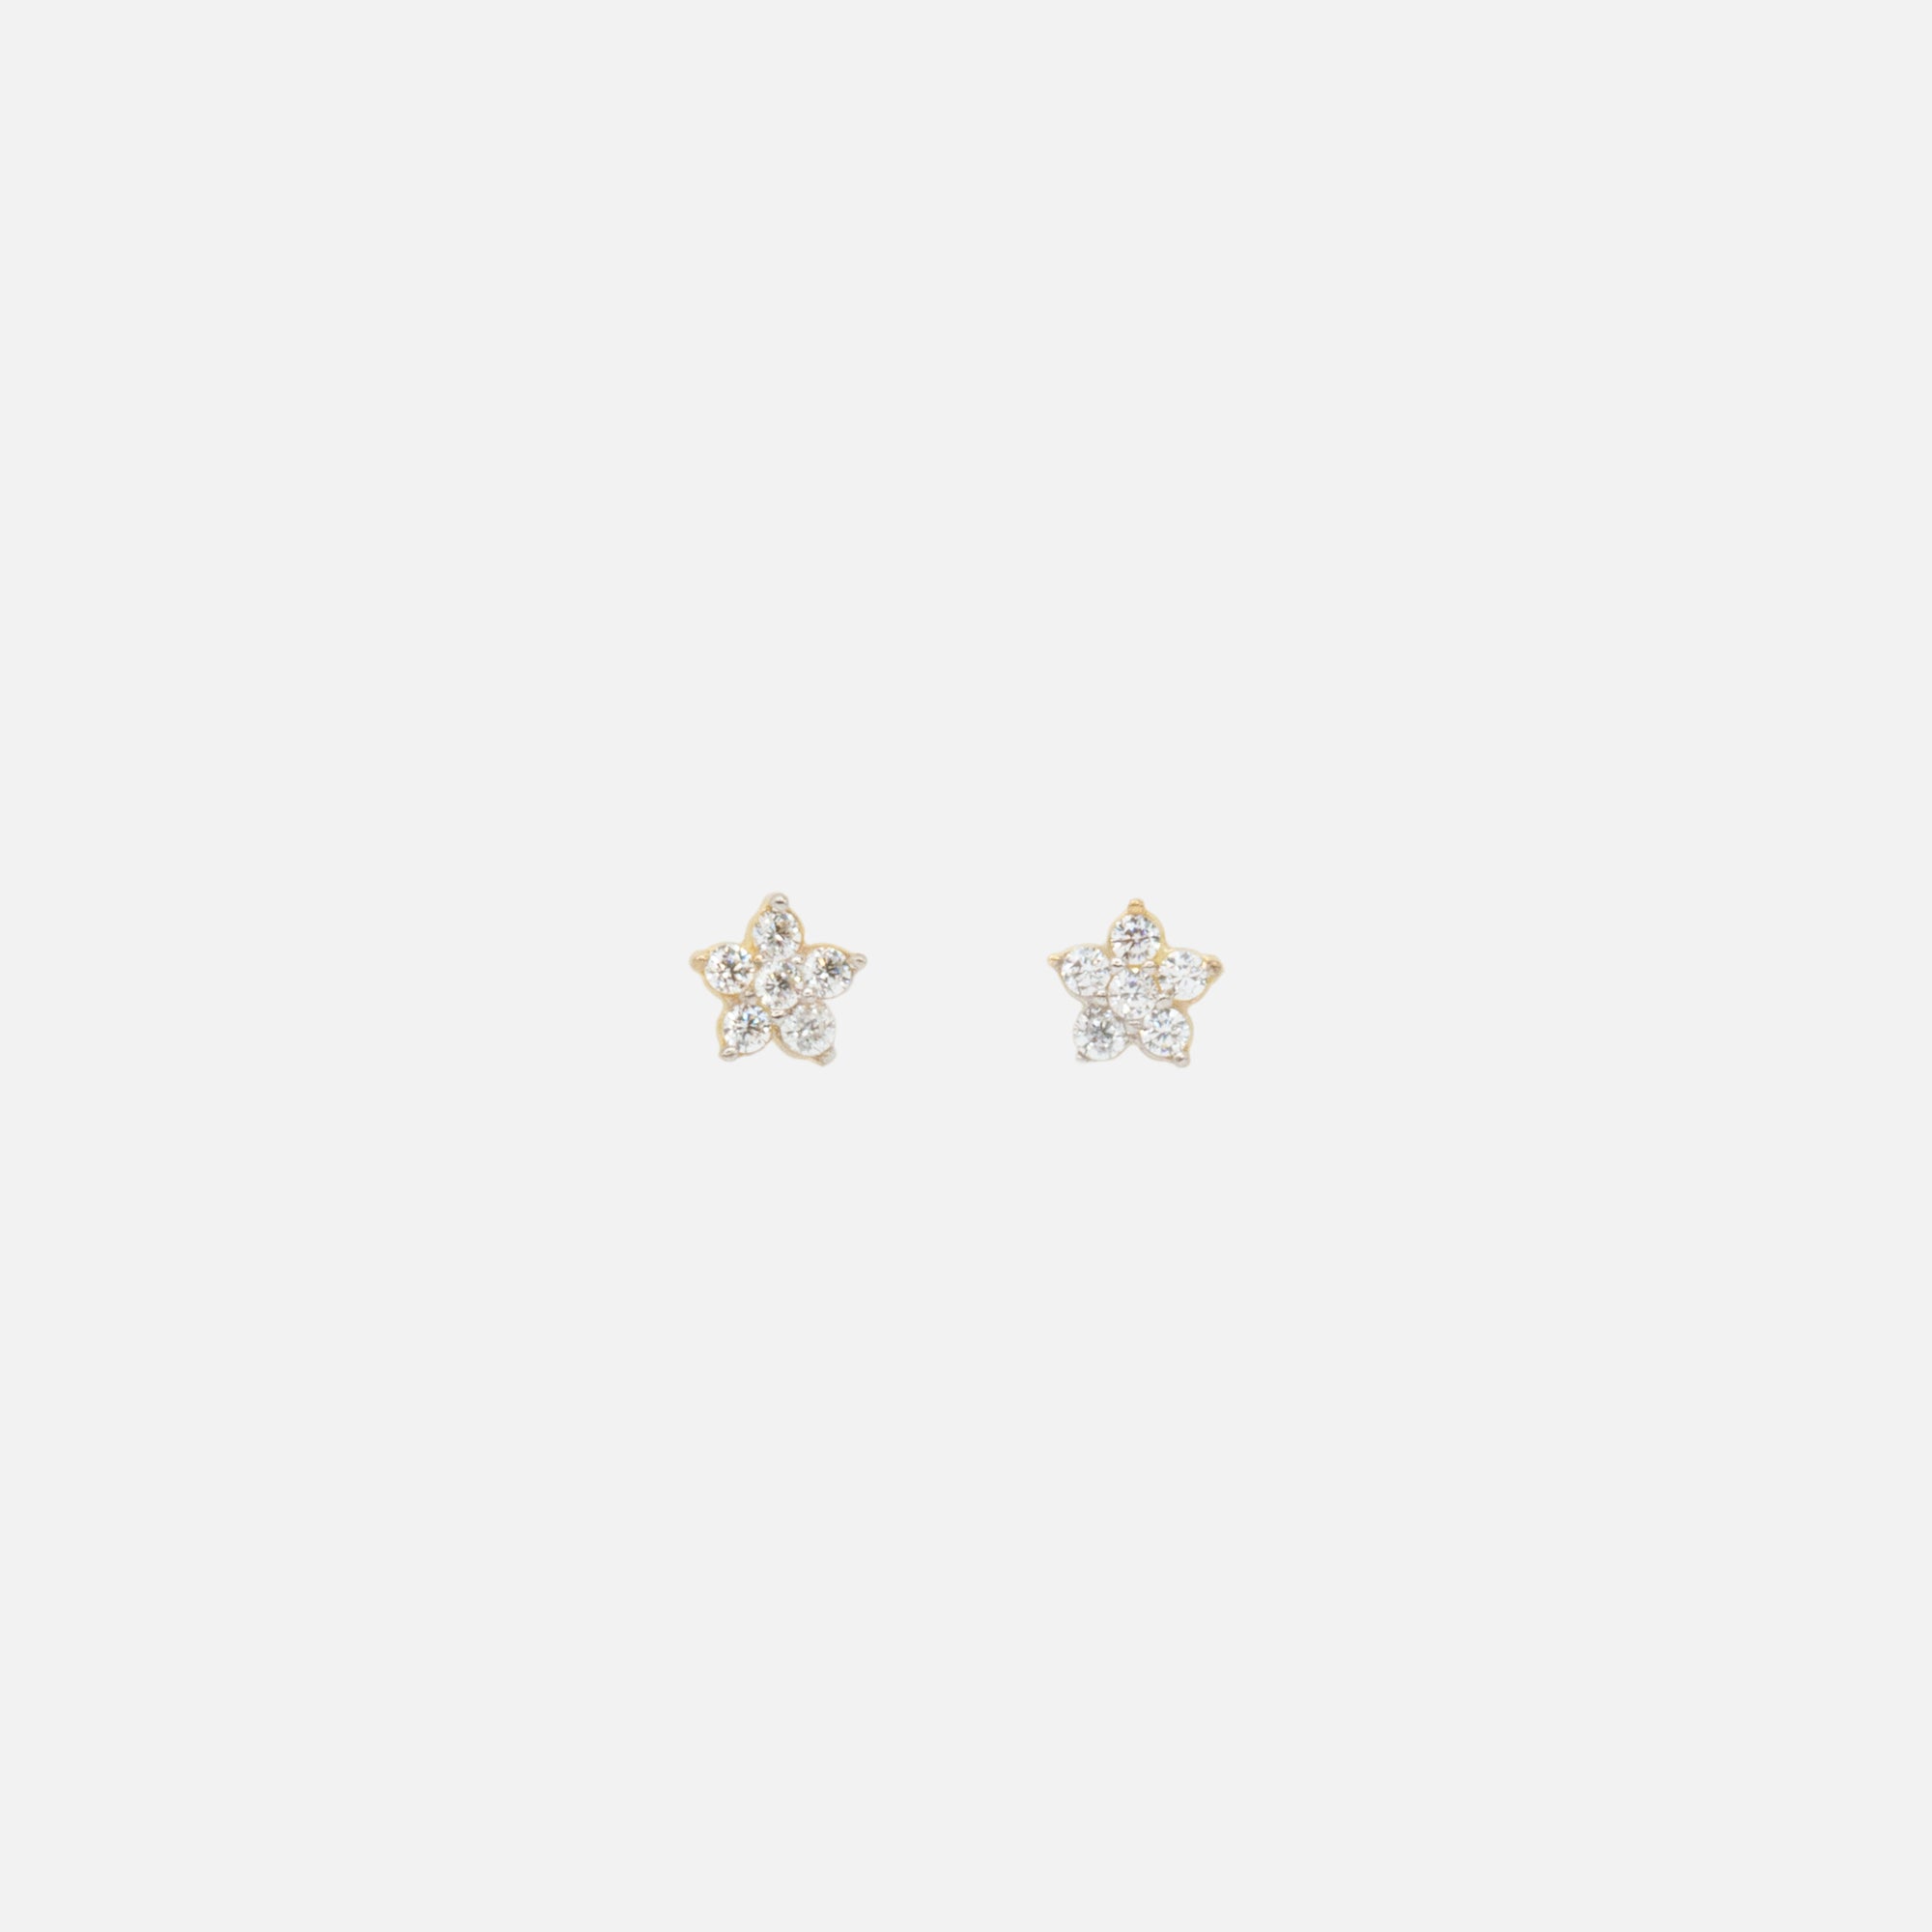 Small cubic zirconia flower earrings in 10k gold